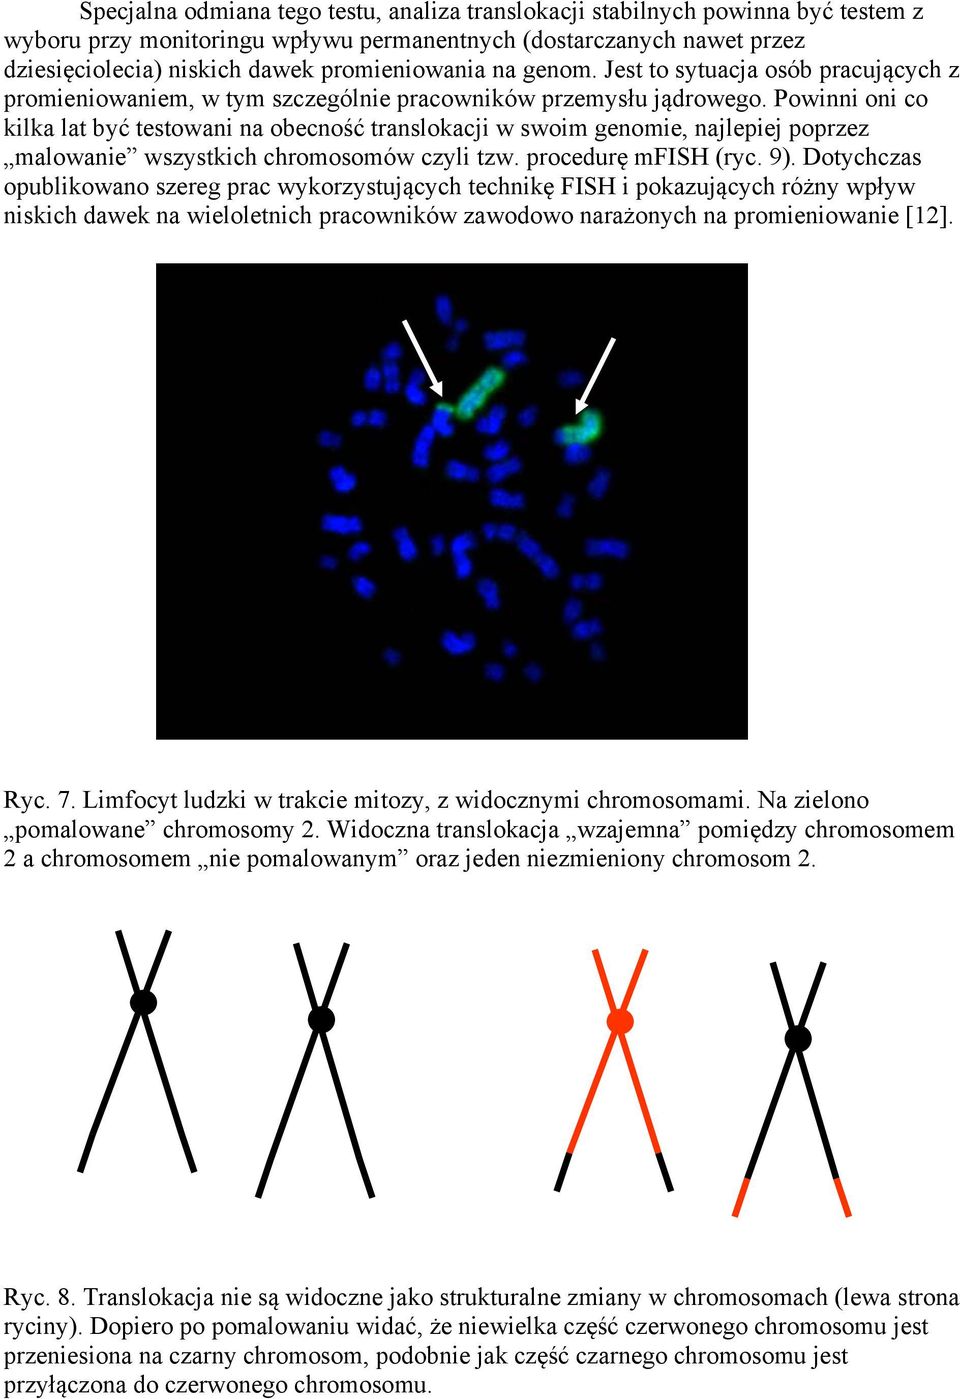 Powinni oni co kilka lat być testowani na obecność translokacji w swoim genomie, najlepiej poprzez malowanie wszystkich chromosomów czyli tzw. procedurę mfish (ryc. 9).